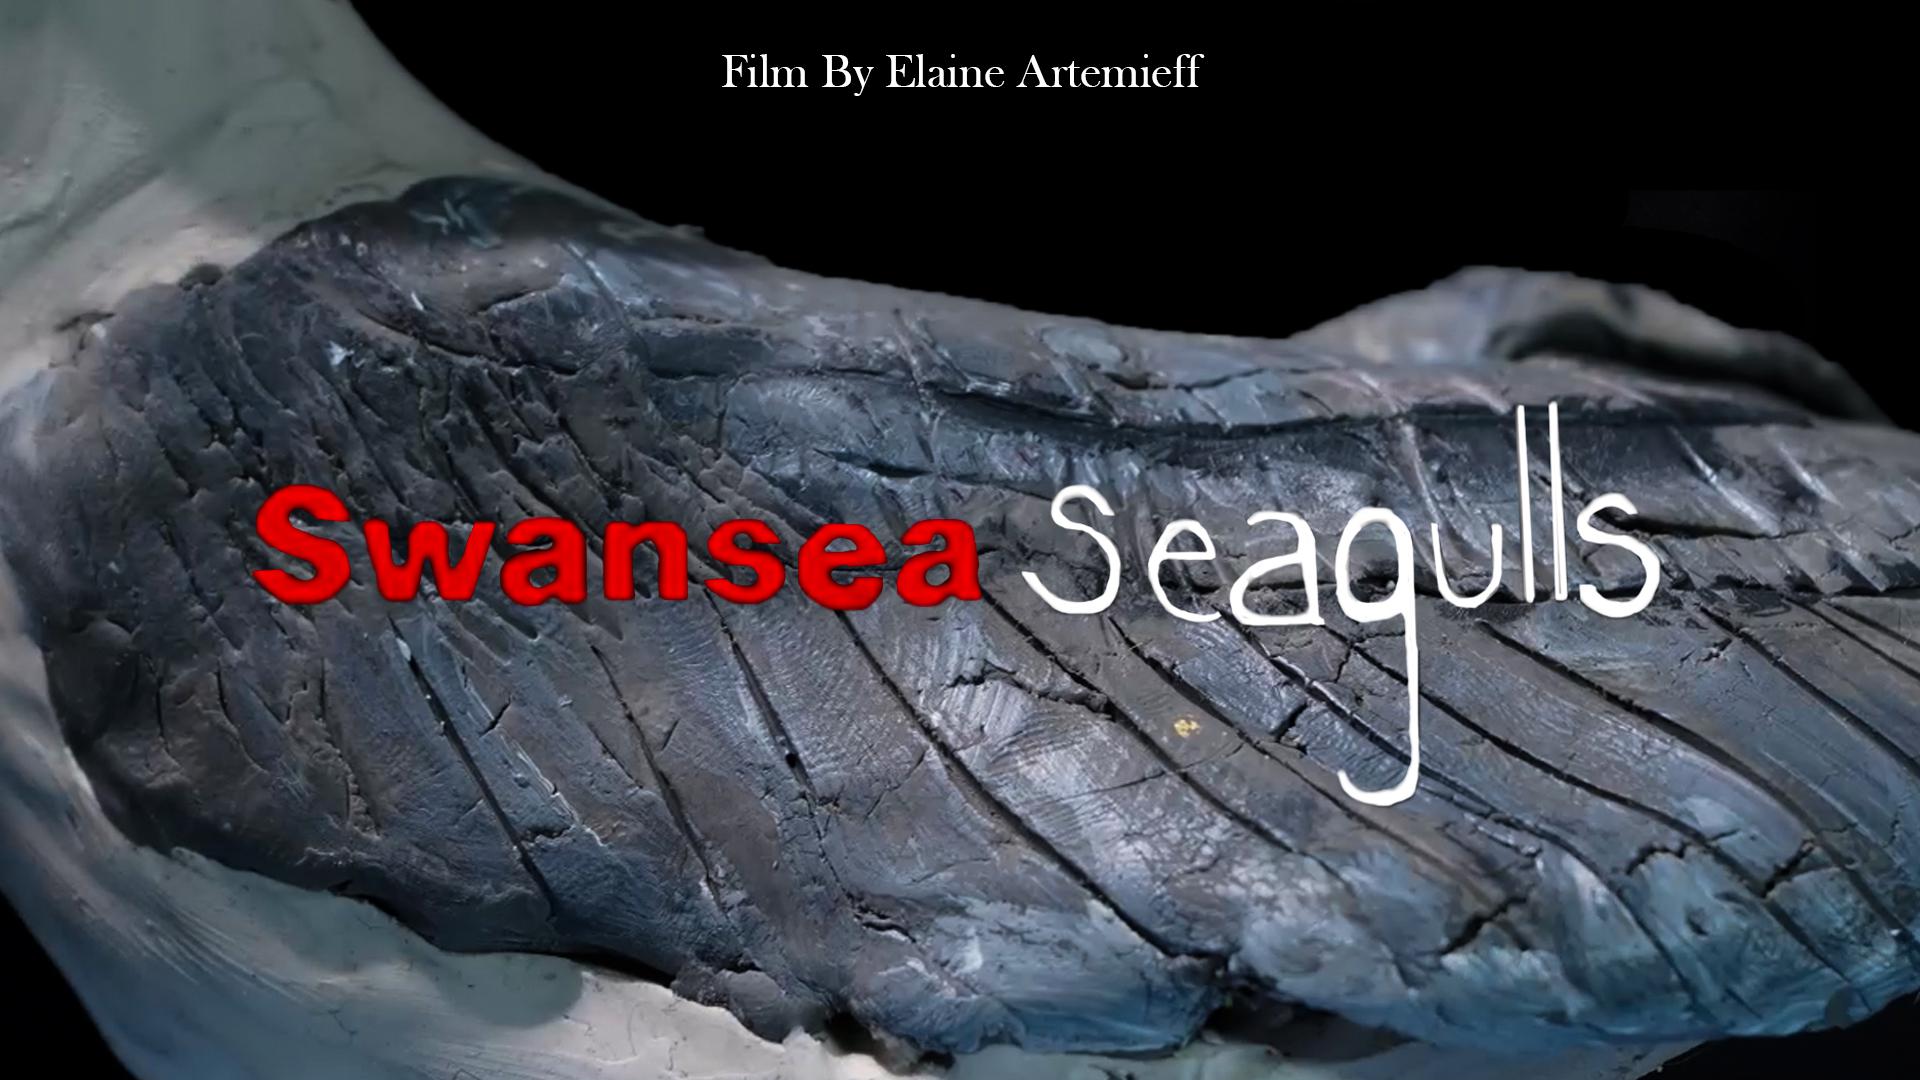 Swansea seagulls